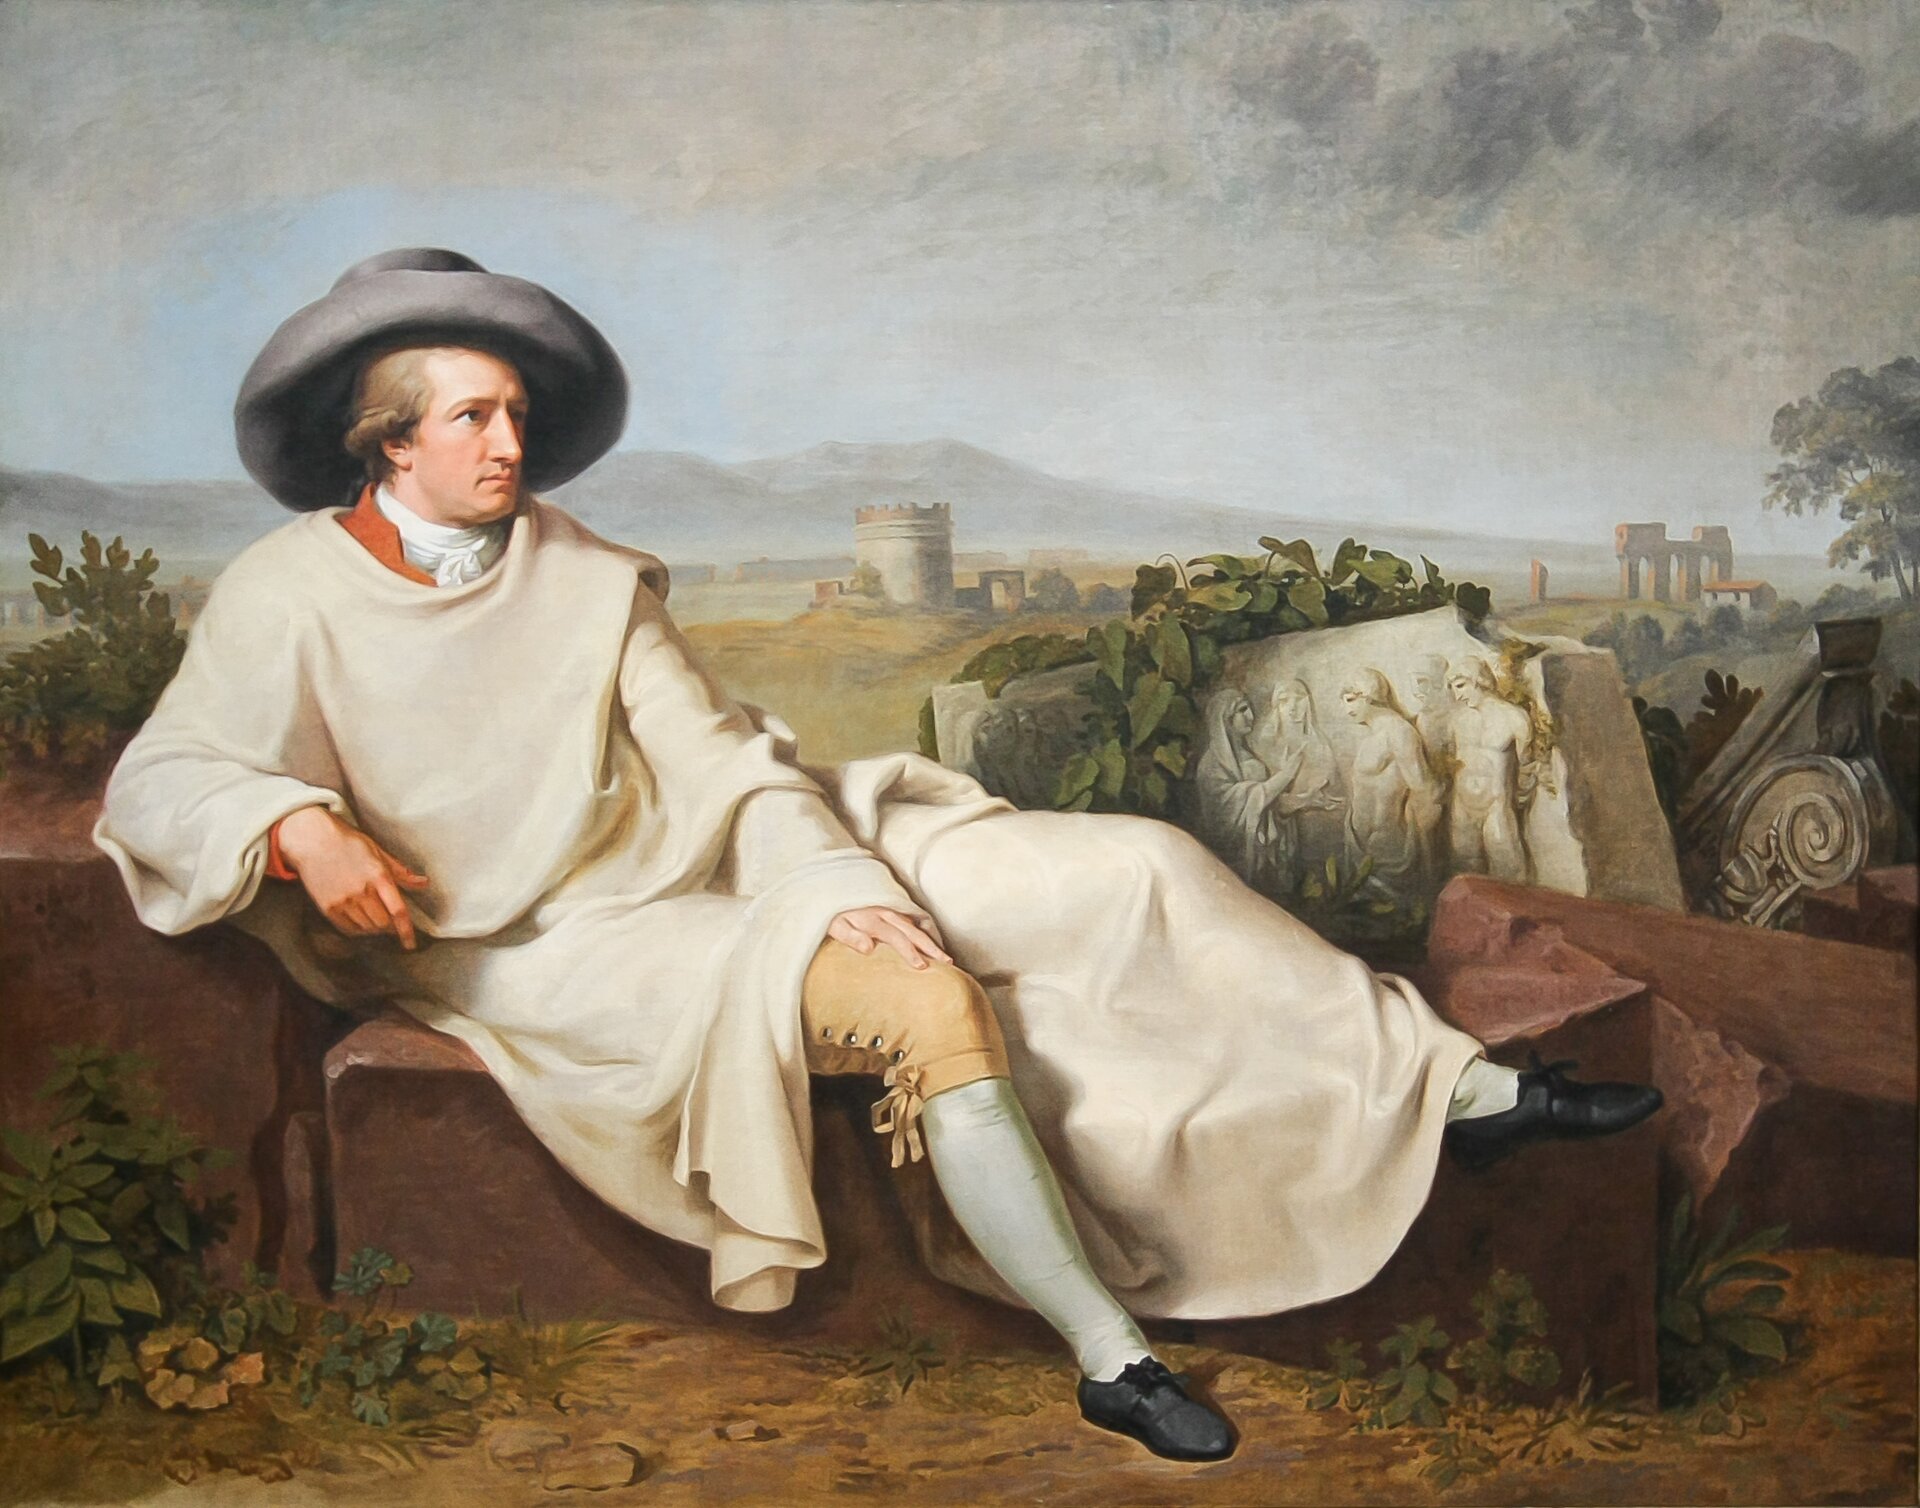 Goethe w Kampanii Źródło: Johann Heinrich Wilhelm Tischbein, Goethe w Kampanii, 1787, olej na płótnie, Städelsches Kunstinstitut und Städtische Galerie, domena publiczna.